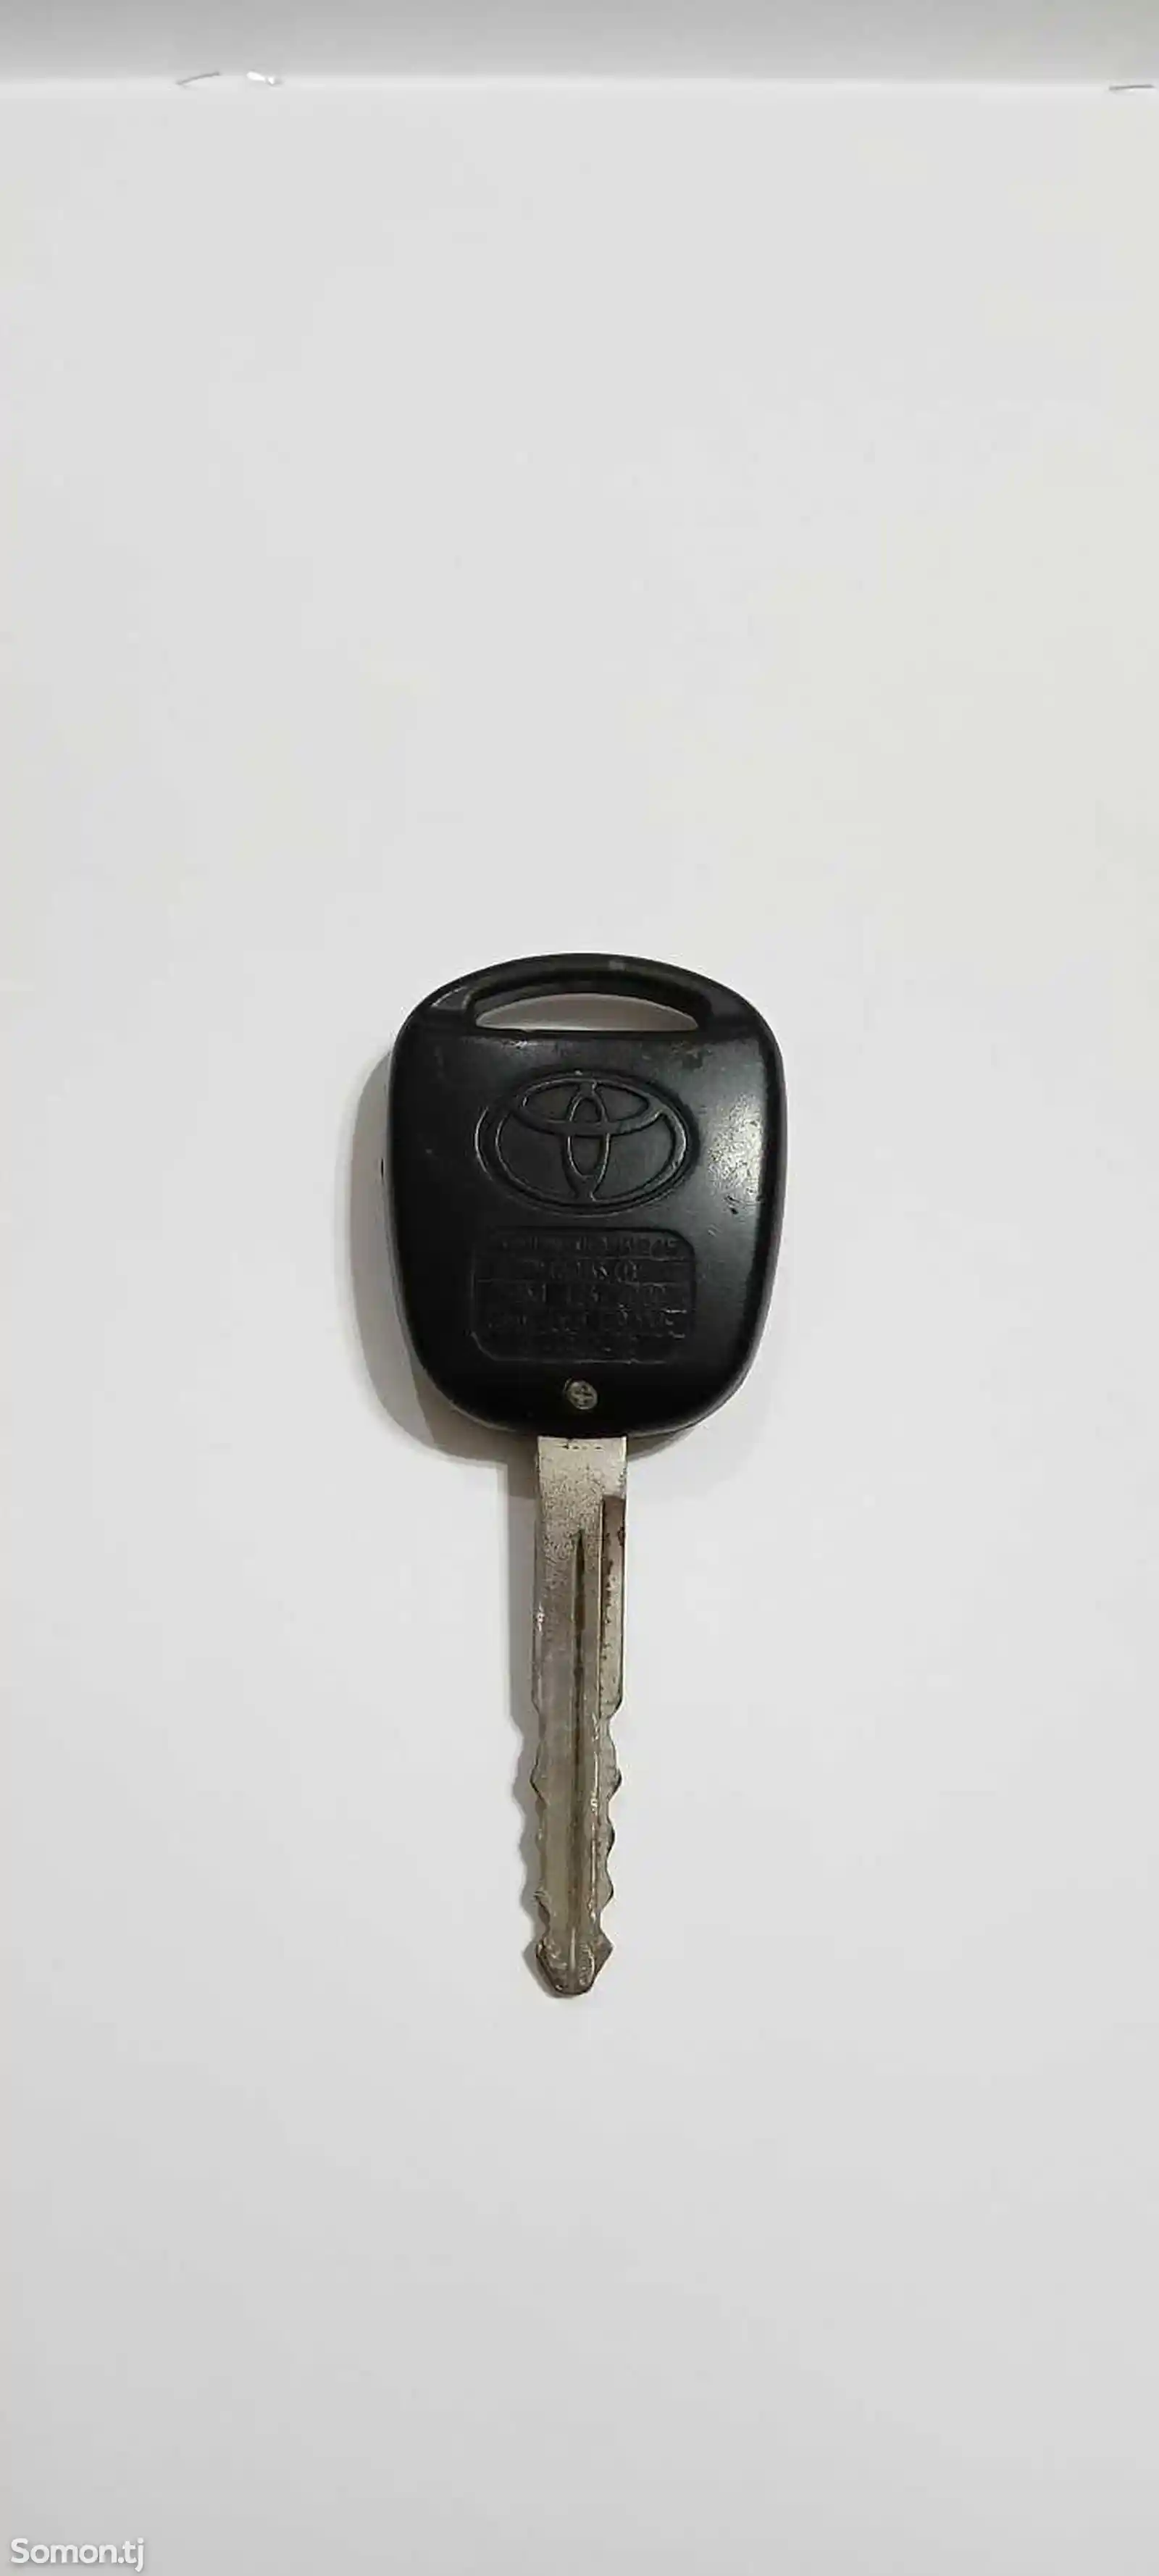 Ключ от Toyota Corolla original-1